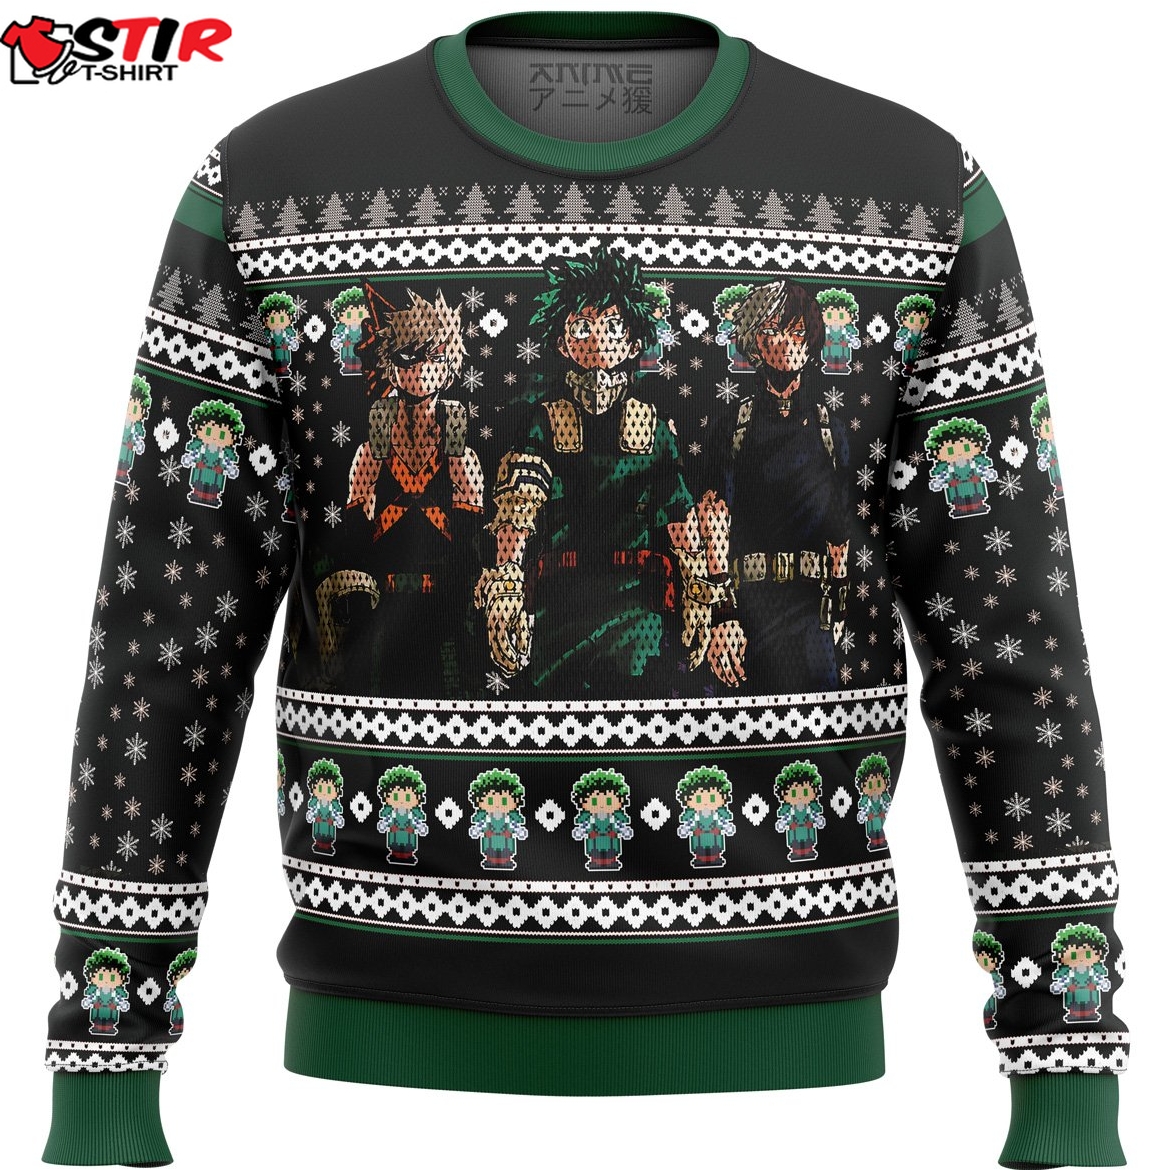 My Hero Academia Top 3 Ugly Christmas Sweater Stirtshirt